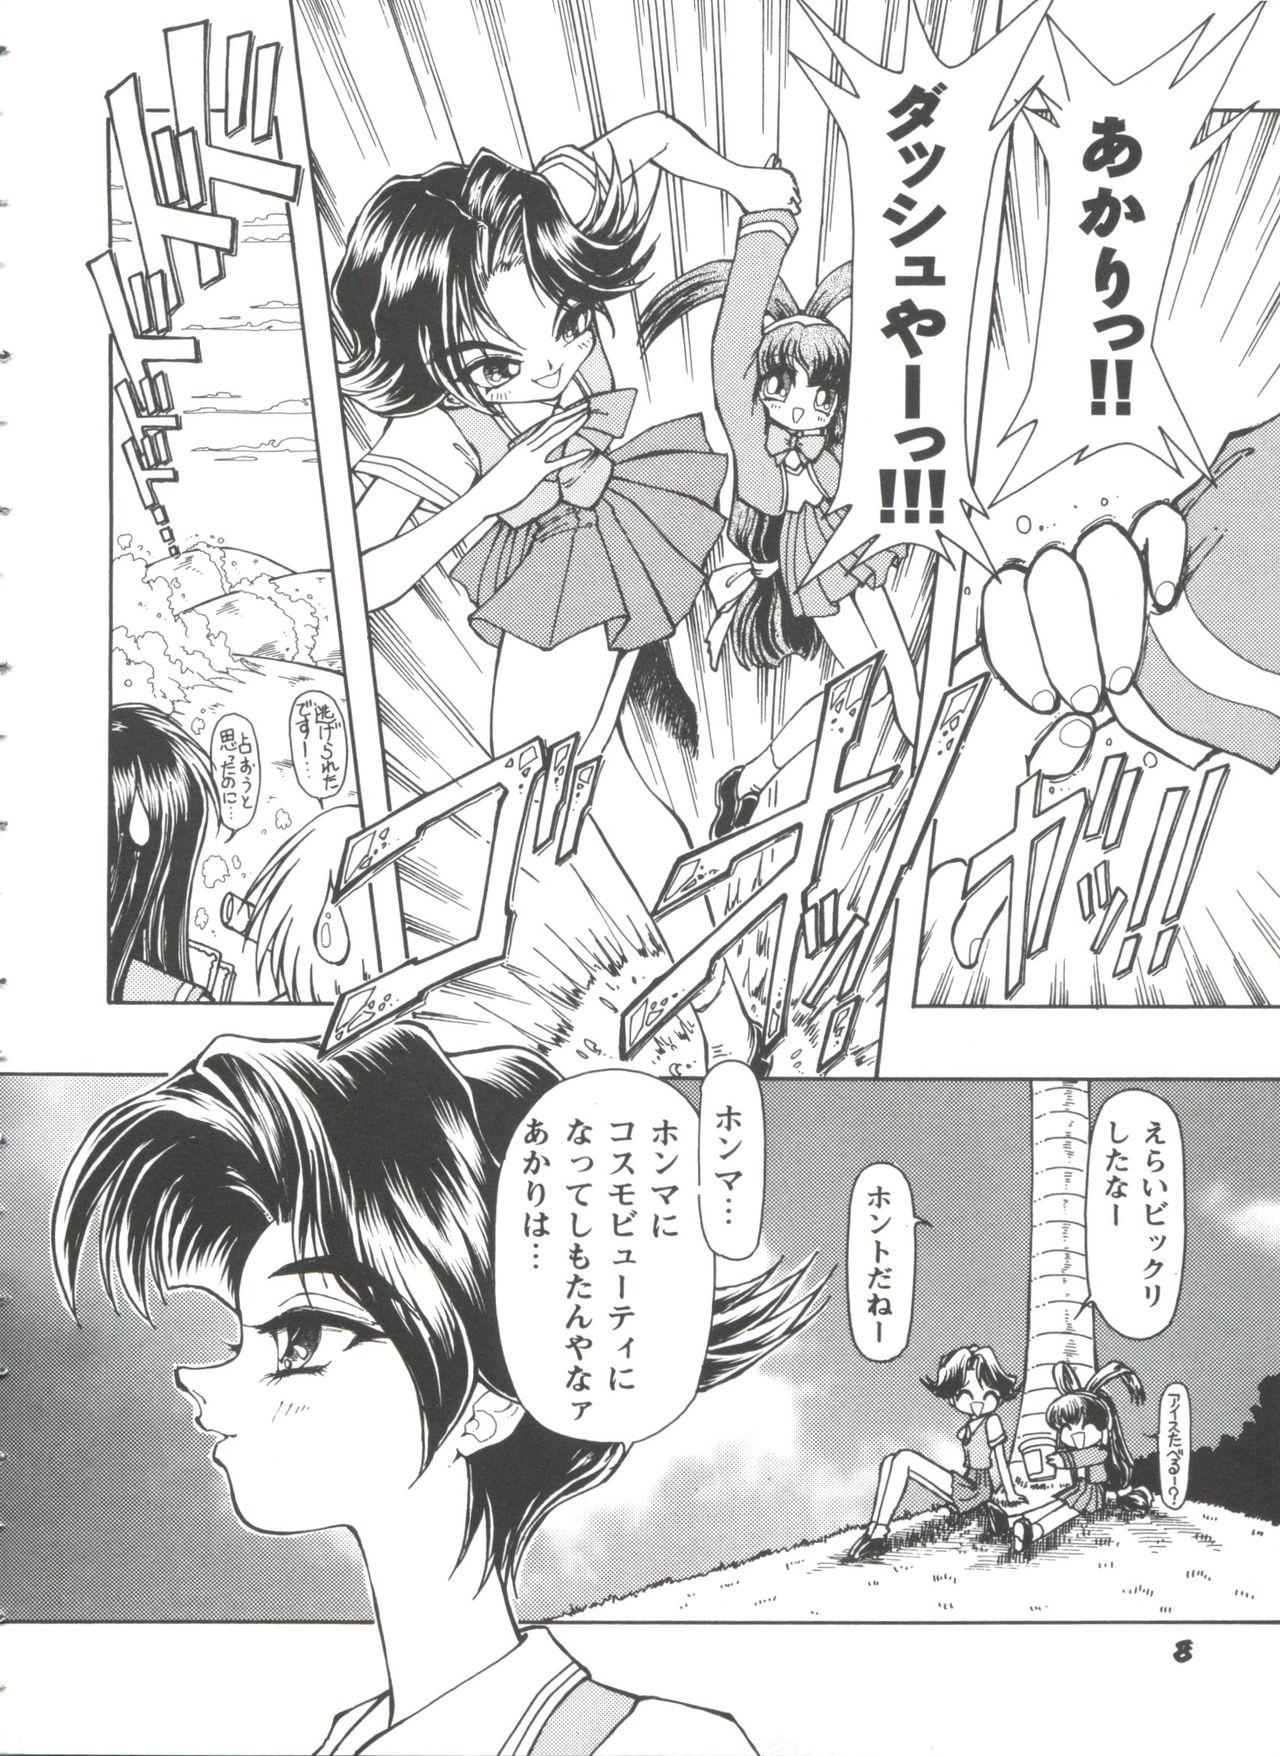 Ftv Girls Girl's Parade 98 Take 10 - Street fighter Darkstalkers Sakura taisen Battle athletes Akihabara dennou gumi Her - Page 9